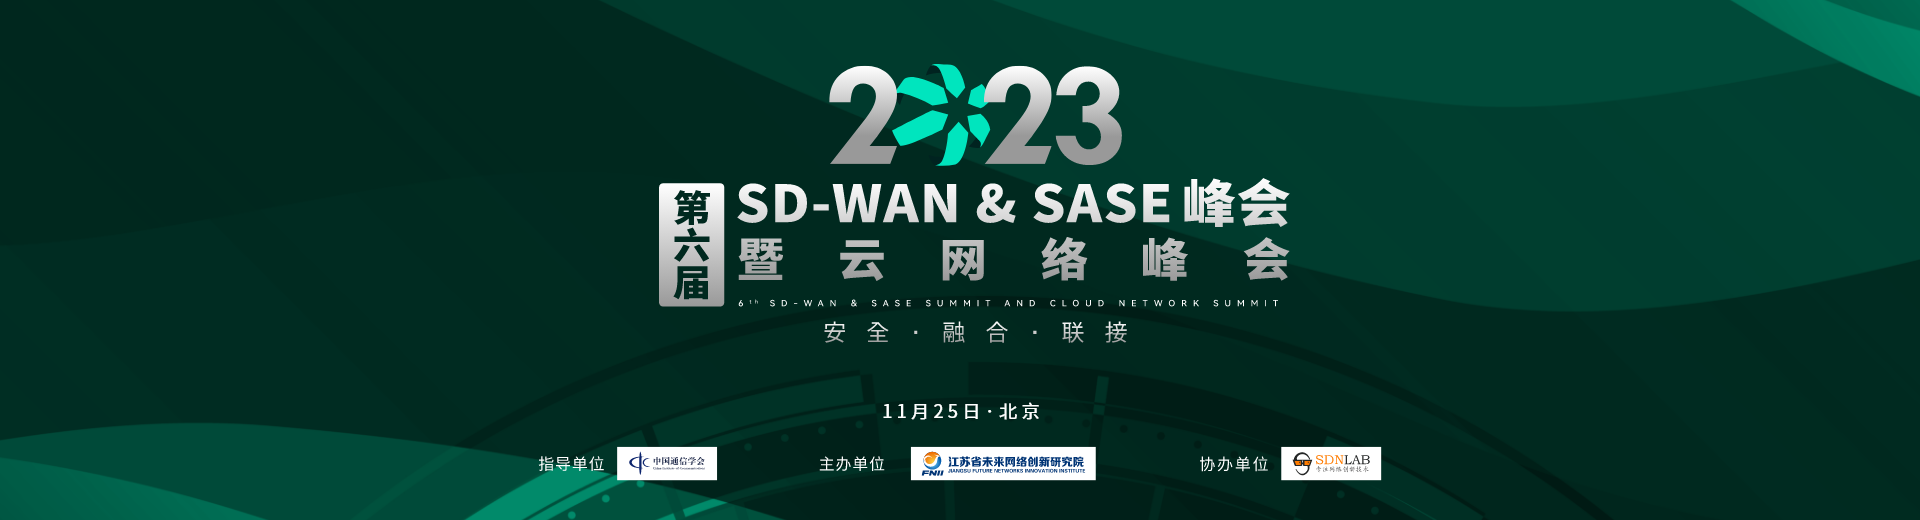 第六届SD-WAN & SASE 峰会暨云网络峰会